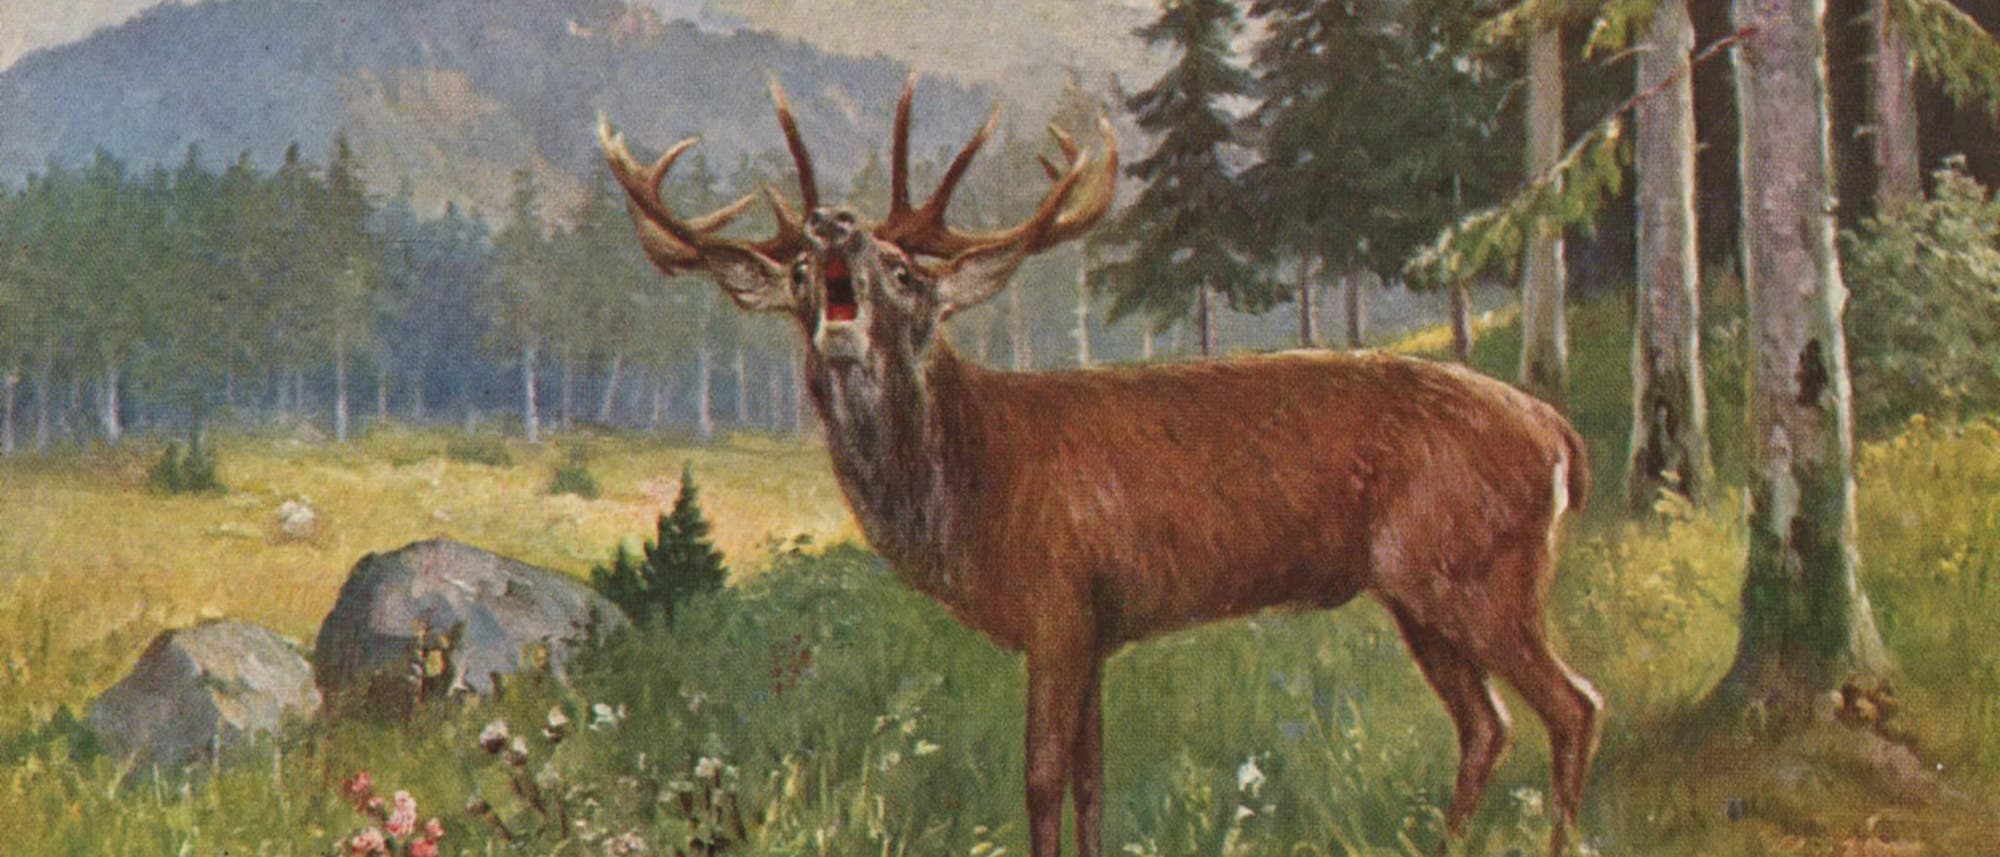 Der röhrende Hirsch ist auf einer Postkarte aus dem Jahr 1905 abgebildet.